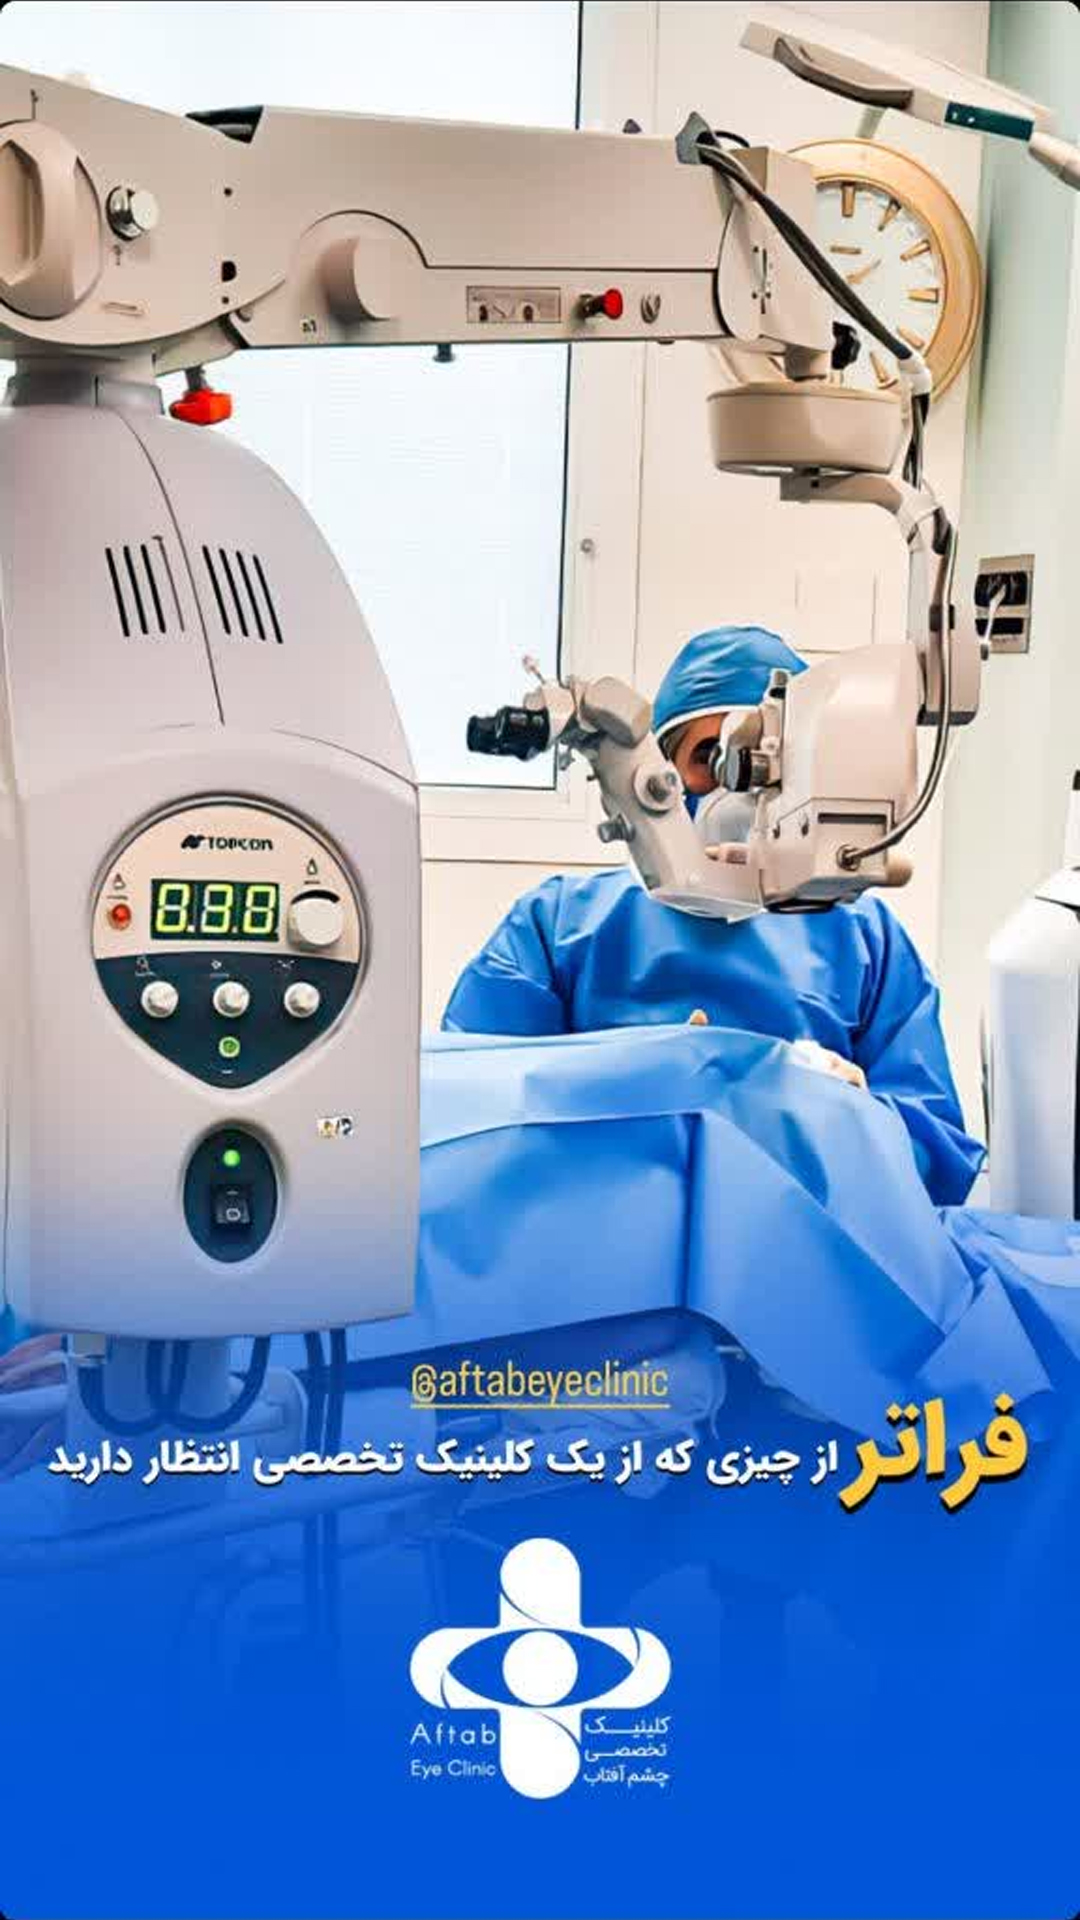 کلینیک چشم پزشکی آفتاب اصفهان